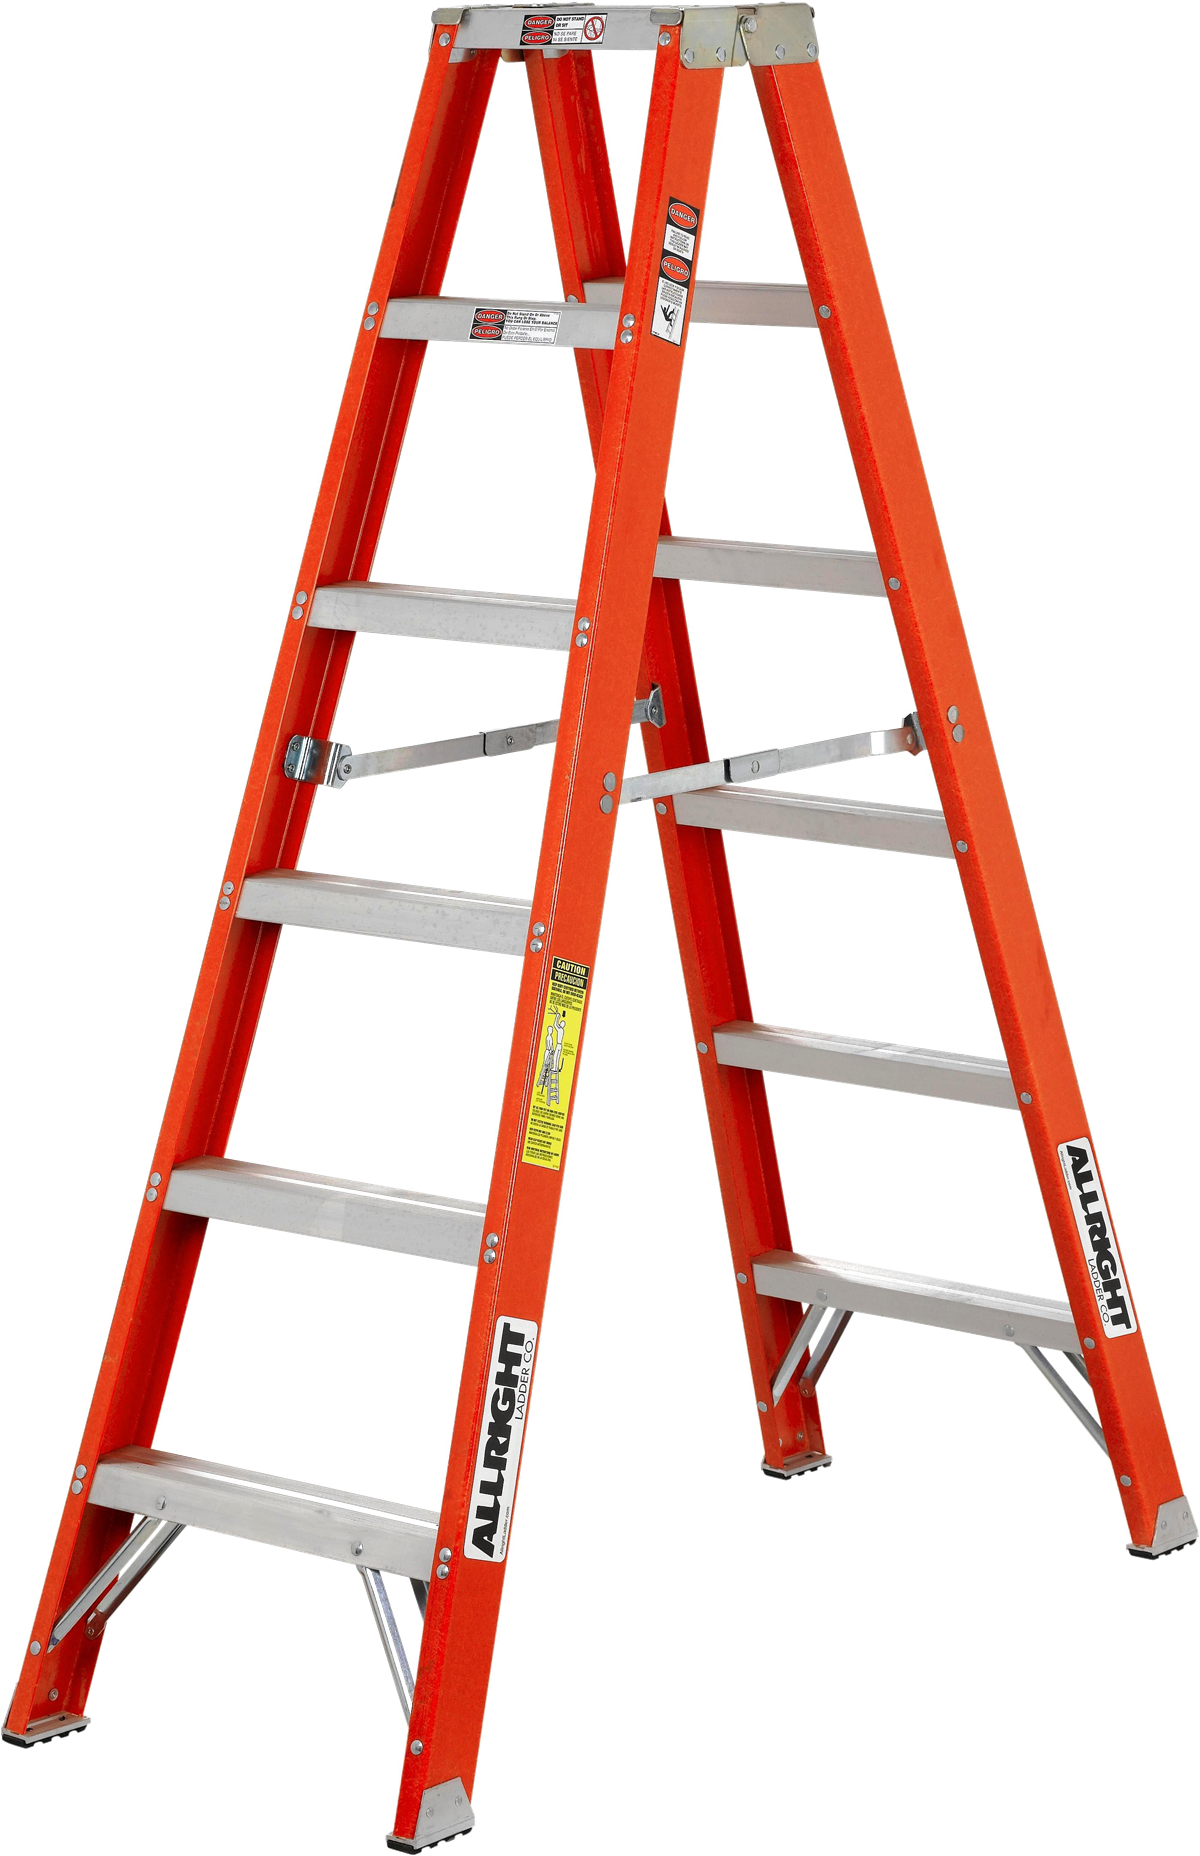 Ladder Free PNG Image